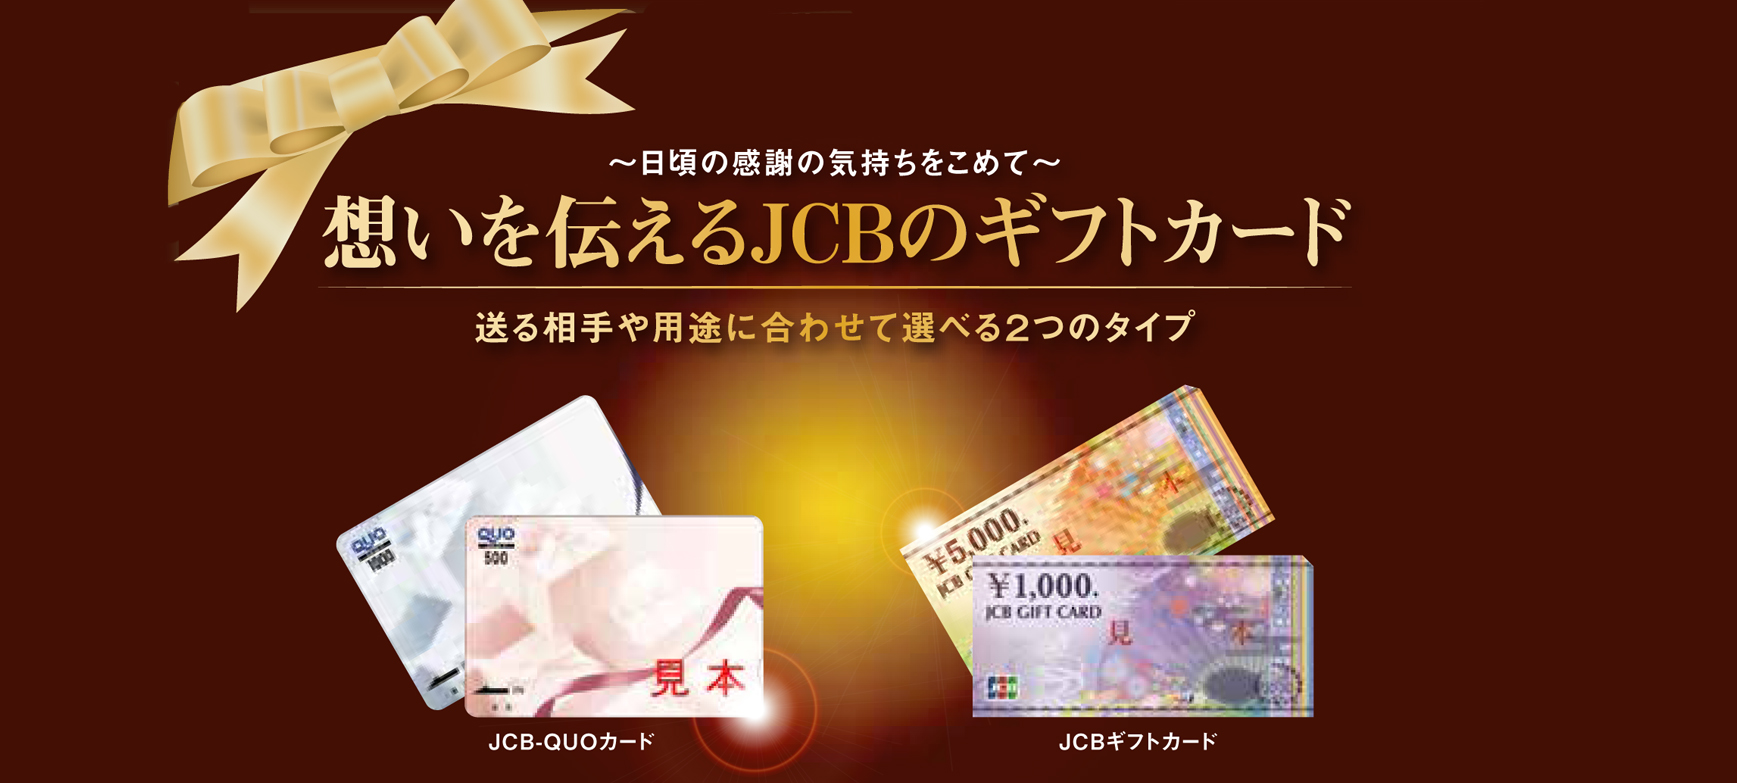 本年もどうぞよろしくお願いいたします。各種ギフトカードのお求めは秋田JCBカードで。